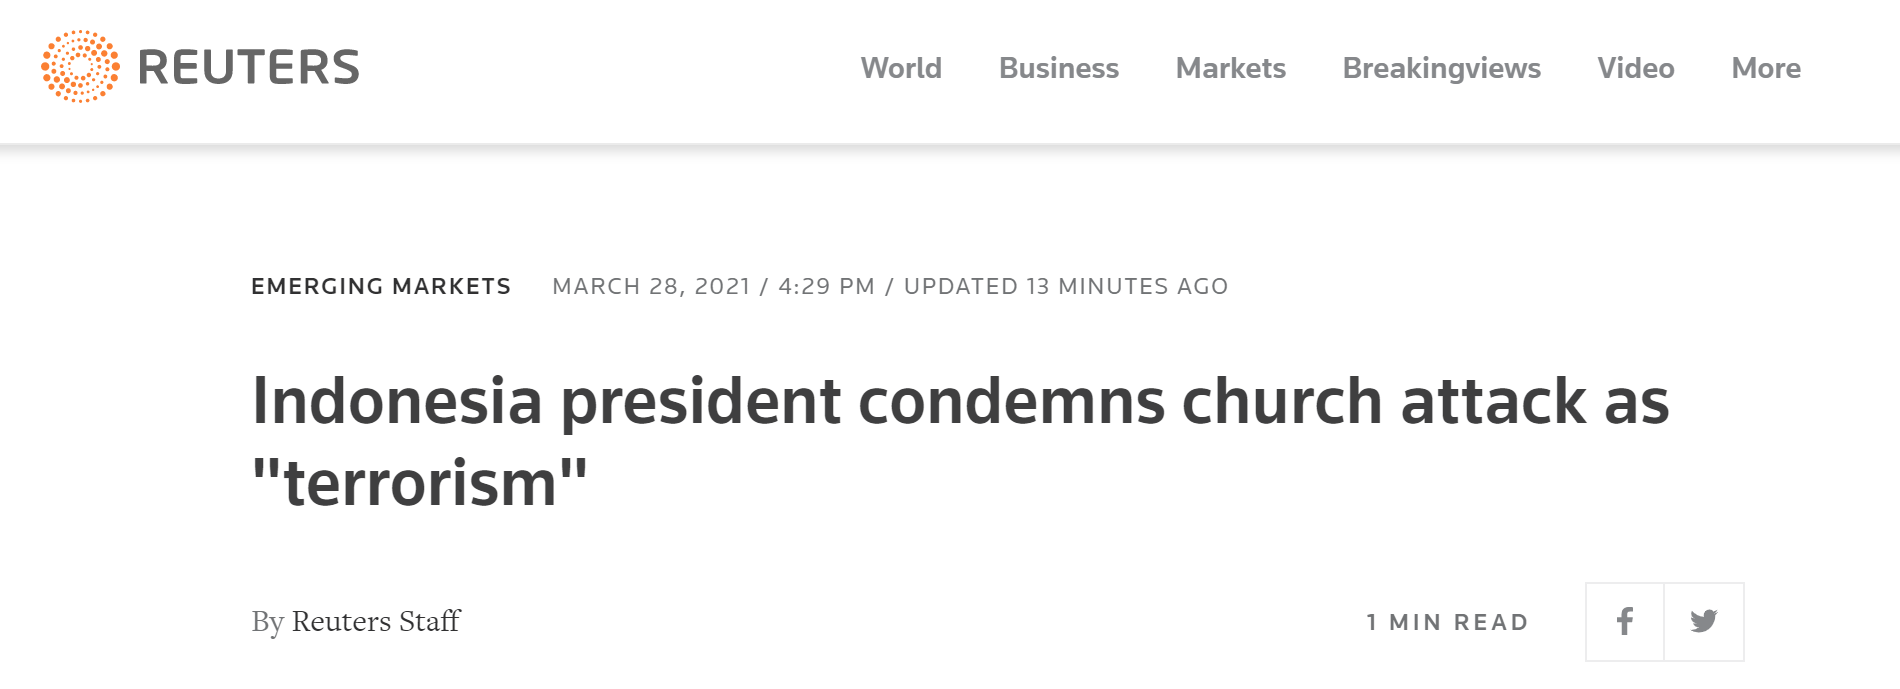 印尼一教堂爆炸致14伤，总统佐科强烈谴责：“恐怖主义行径”